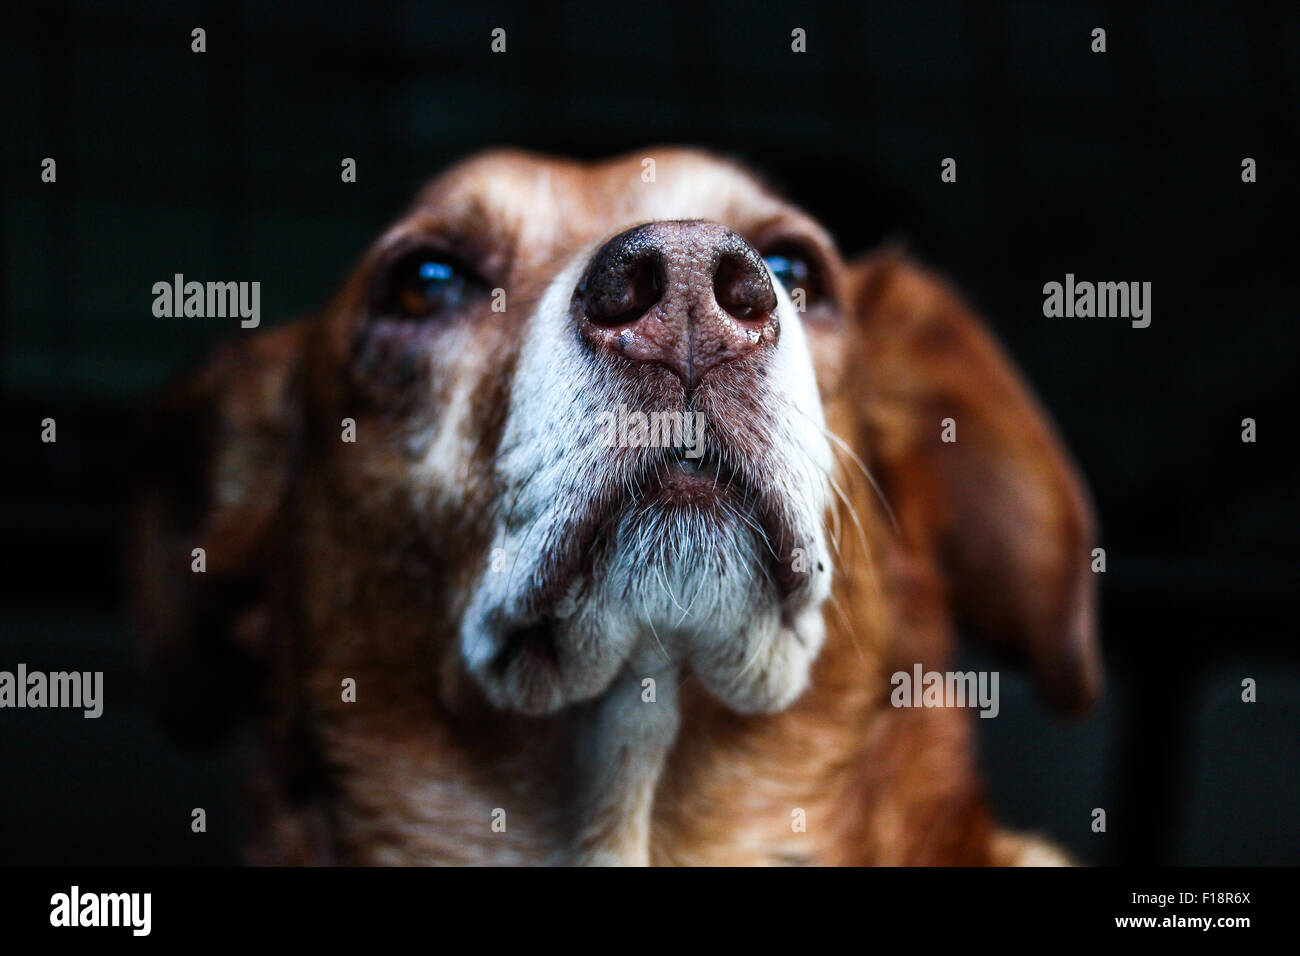 Ein Hundeportrait bei dem wachen die Augen in der HIntergrundunschärfe liegen, die Schnauze angegraute den Mittelpunkt bildet. Foto Stock